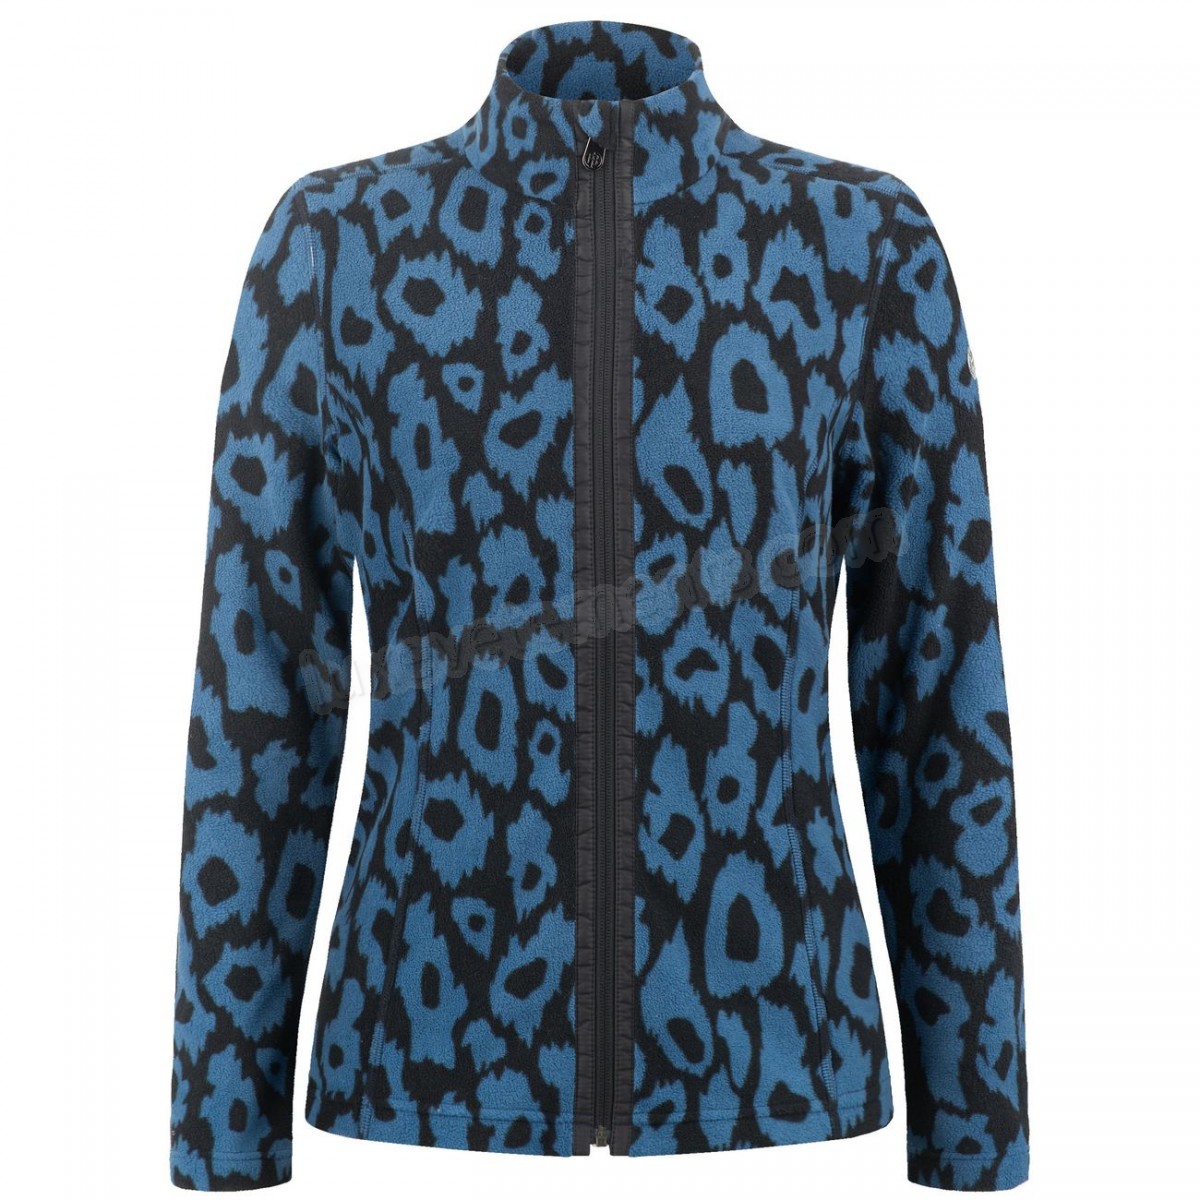 Poivre Blanc-Sports d'hiver femme POIVRE BLANC Veste Polaire Poivre Blanc Fleece Jacket 1500 Panther Blue Femme Vente en ligne - -4